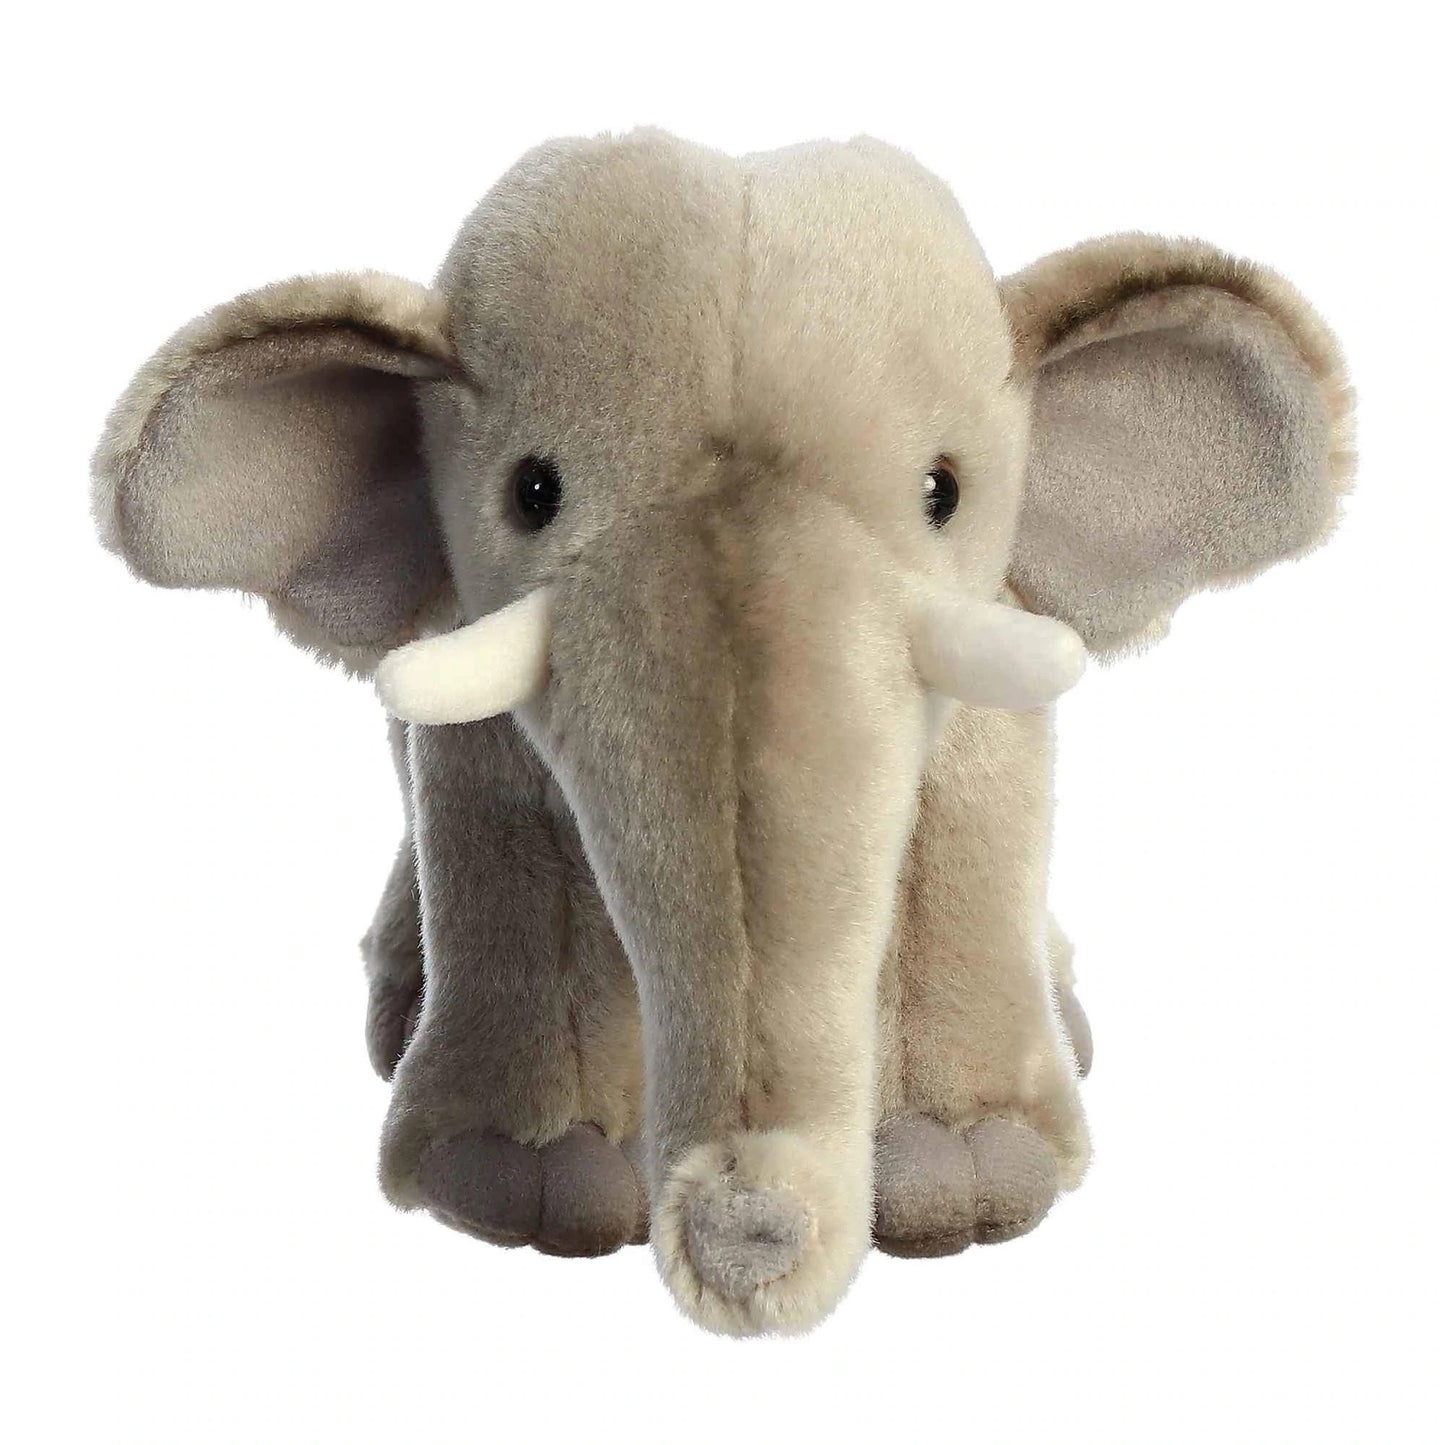 Asian Elephant Plush